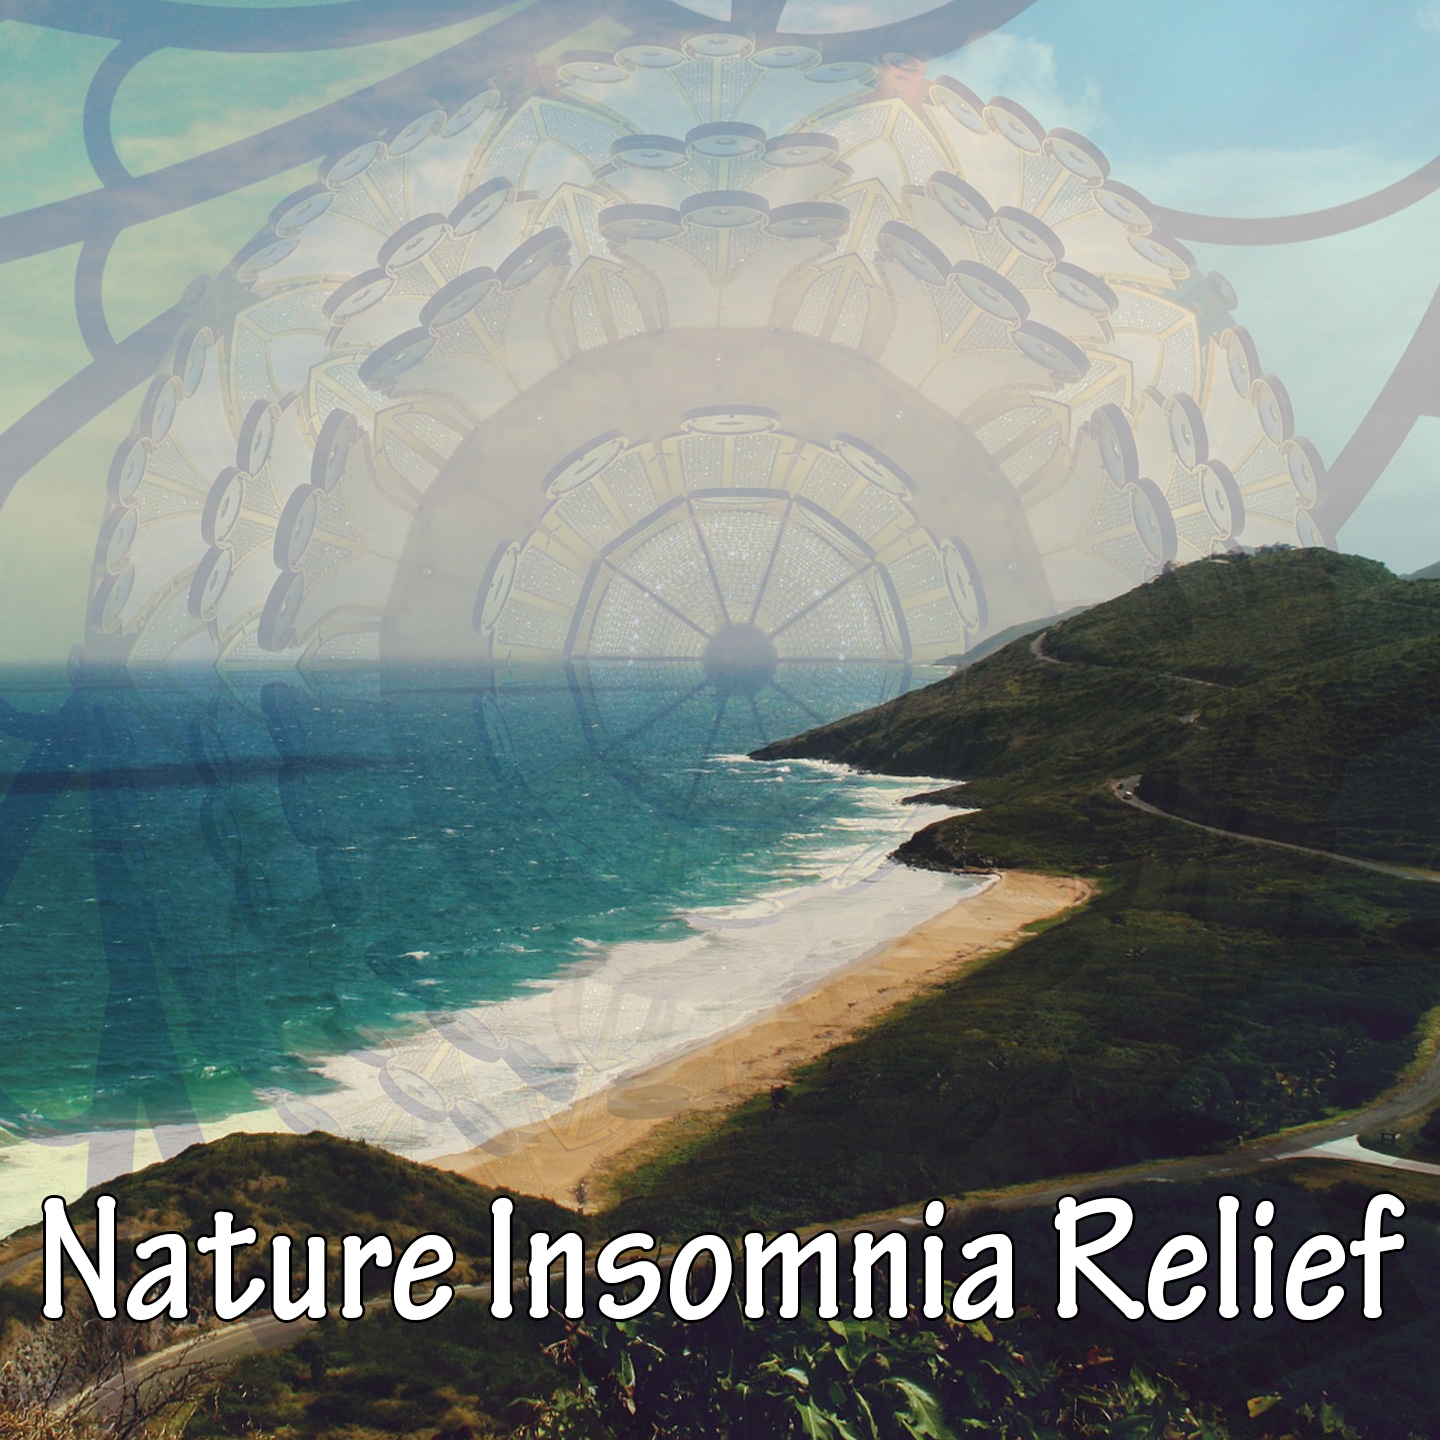 Nature Insomnia Relief